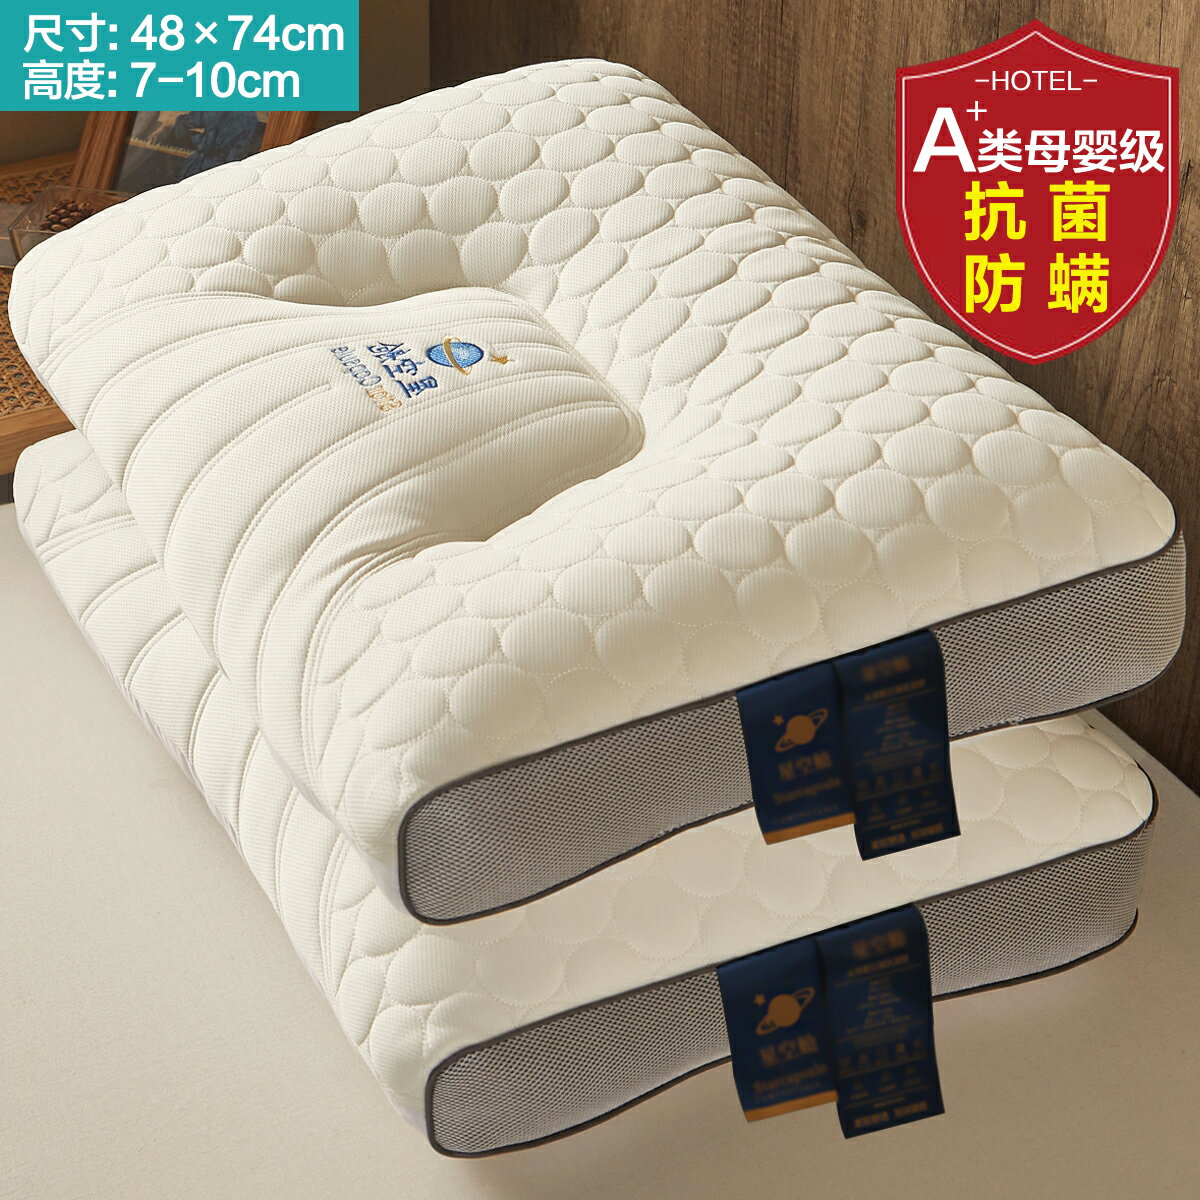 枕心 枕芯 枕頭 泰國乳膠枕頭一對家用天然橡膠記憶單人宿舍學生護頸椎枕芯助睡眠『ZW2613』